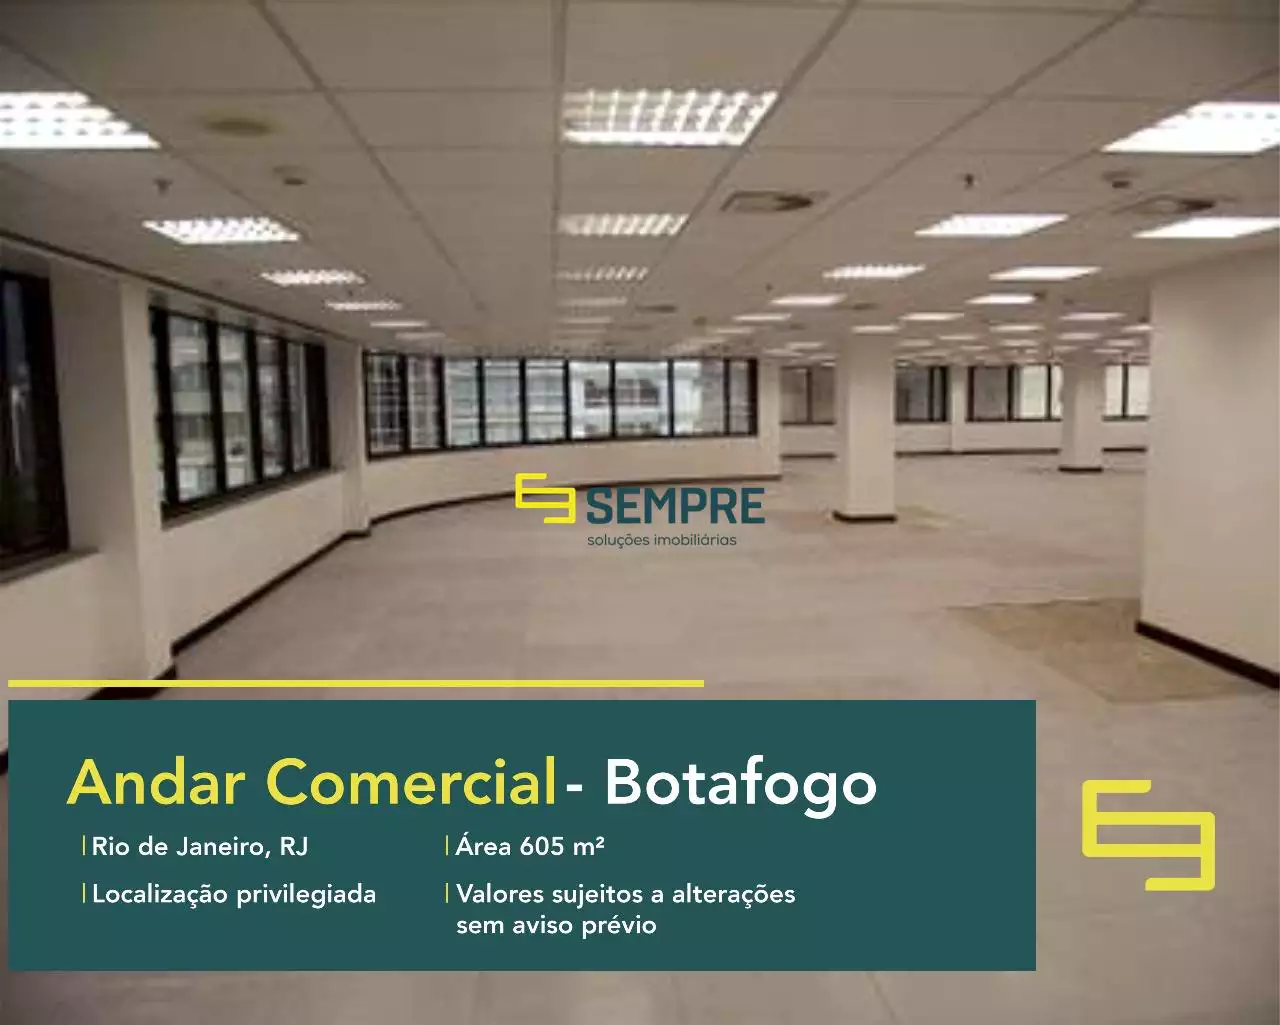 Andar corporativo para alugar no Botafogo Trade Center - RJ, excelente localização. O estabelecimento comercial conta com área de 605 m².